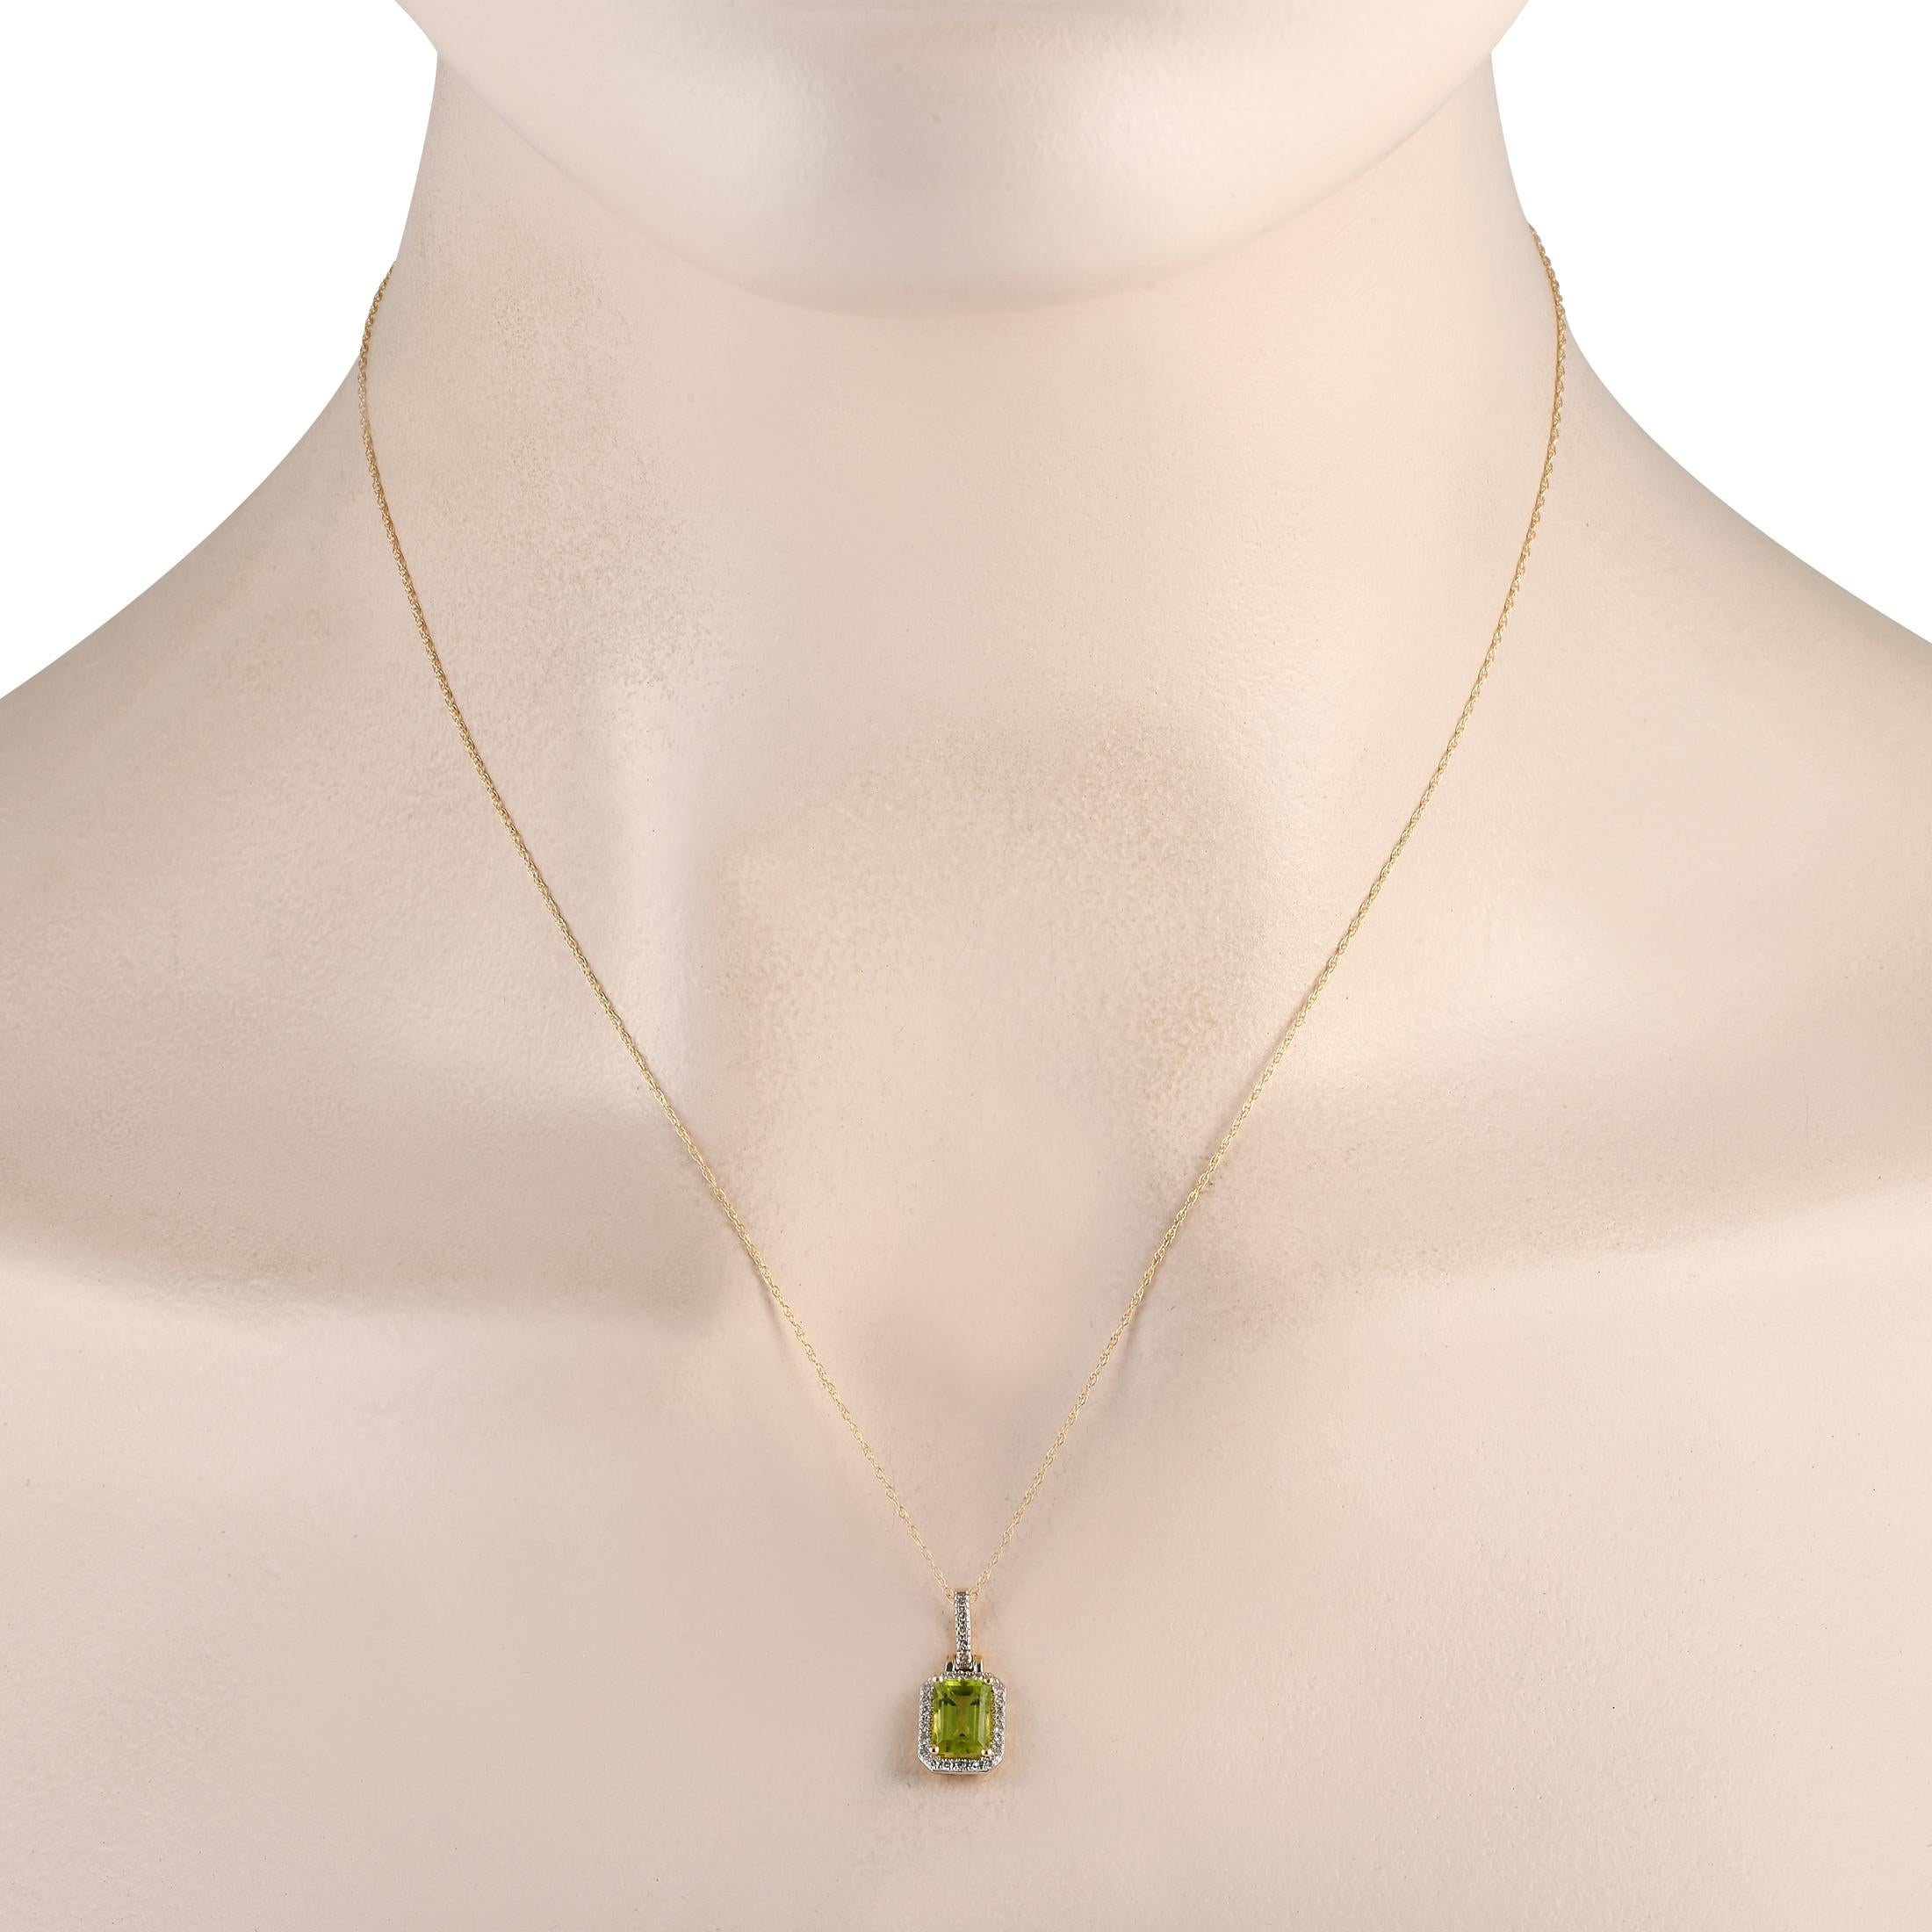 Diese elegante Halskette ist ein echter Hingucker. An einer 18er Kette hängt ein auffälliger Anhänger aus 14K Gelbgold, der 0,65 lang und 0,30 breit ist. Es wird durch funkelnde Diamant-Akzente von insgesamt 0,12 Karat und einen atemberaubenden